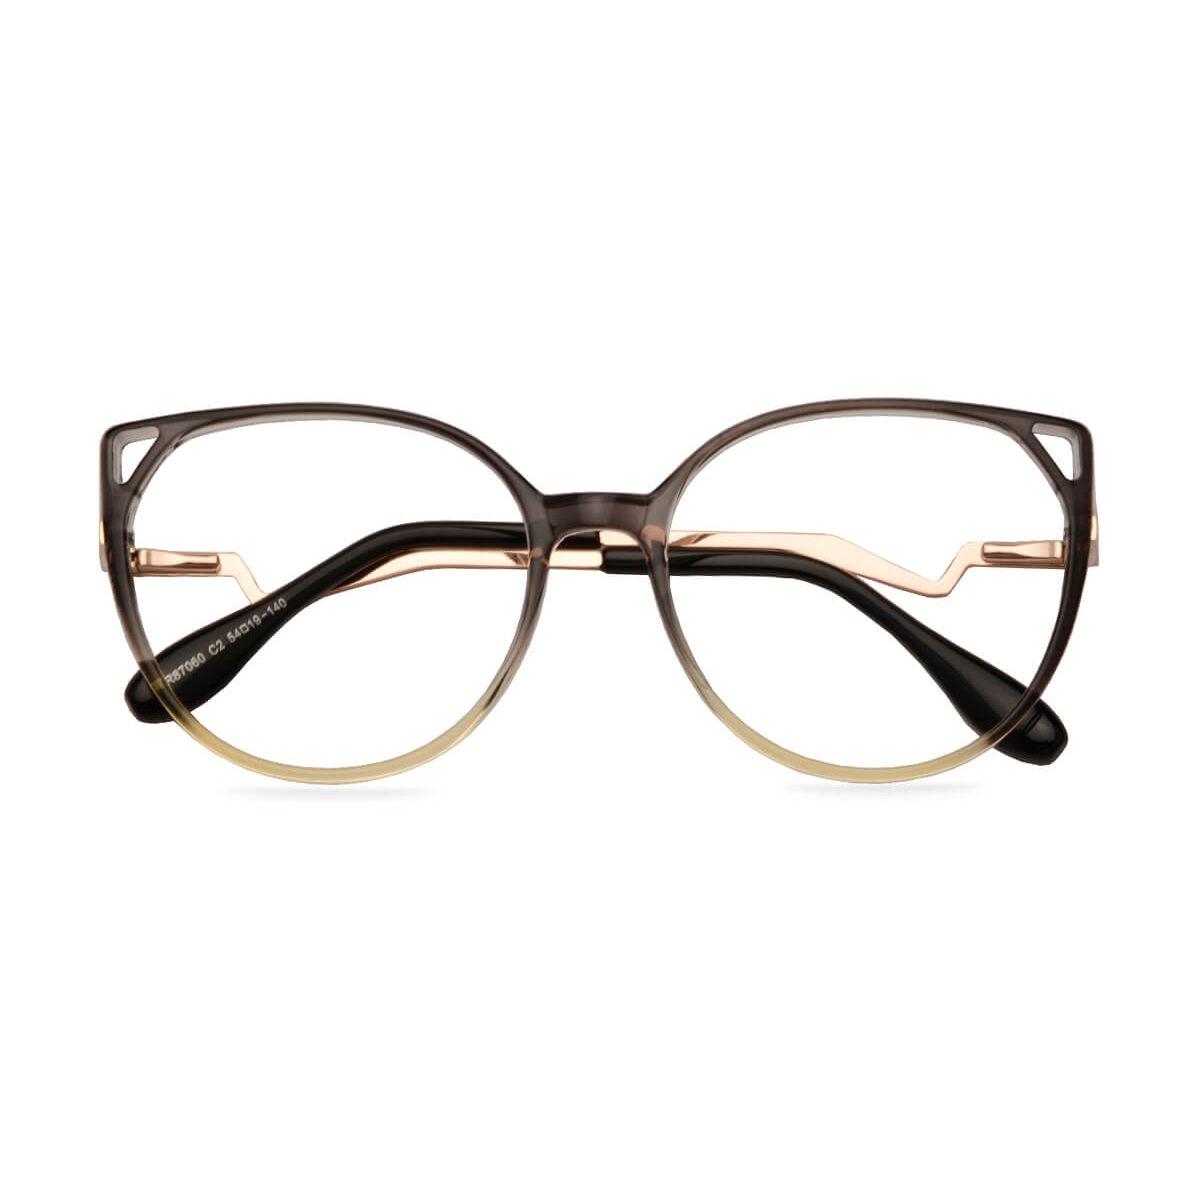 87060 Cat-eye Gray Eyeglasses Frames | Leoptique